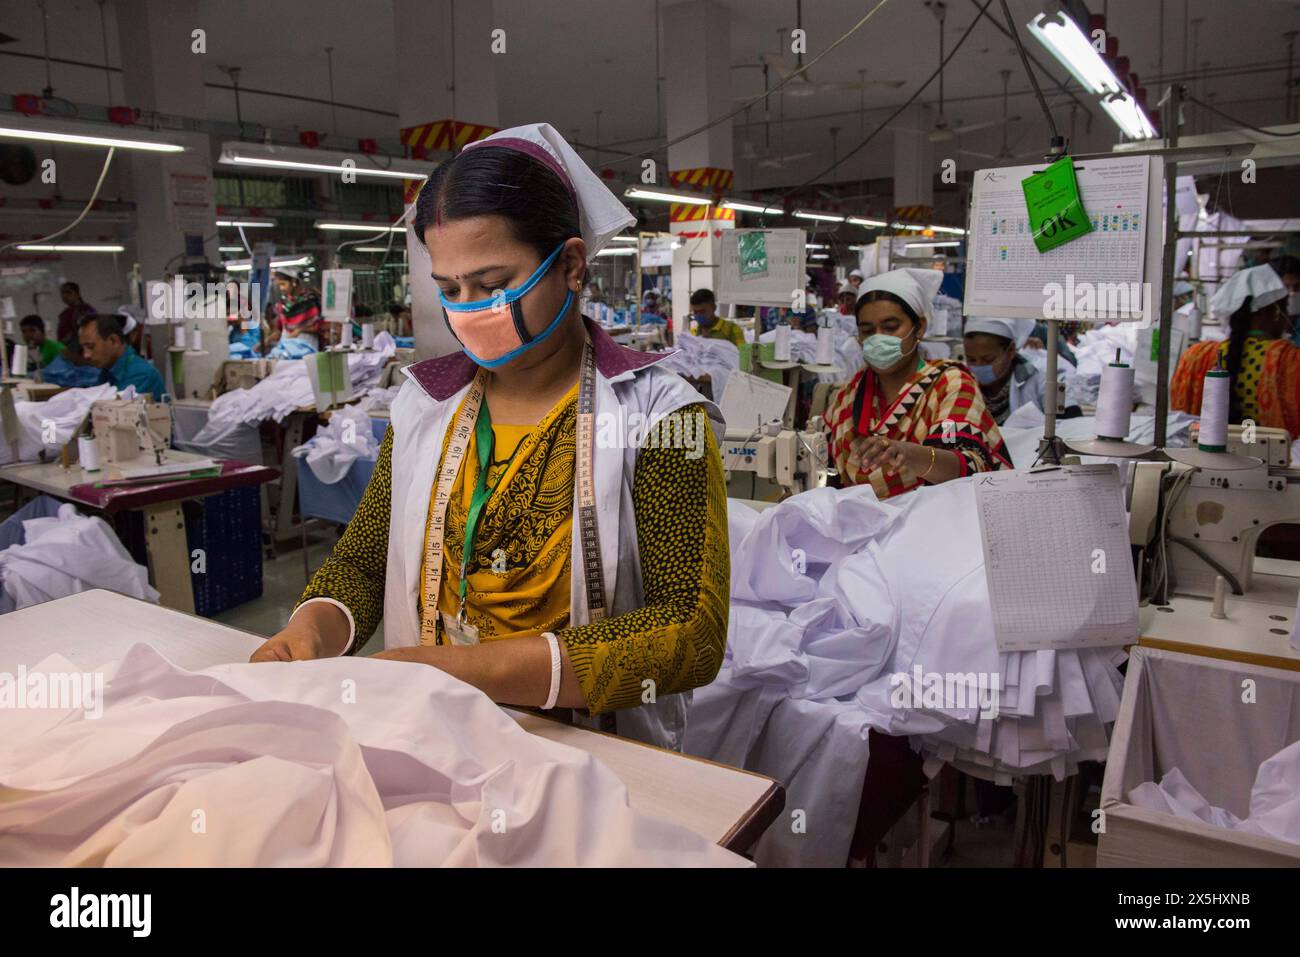 Asie du Sud, Bangladesh, Dhaka. Les gens travaillent dans une usine de vêtements. (Usage éditorial uniquement) Banque D'Images